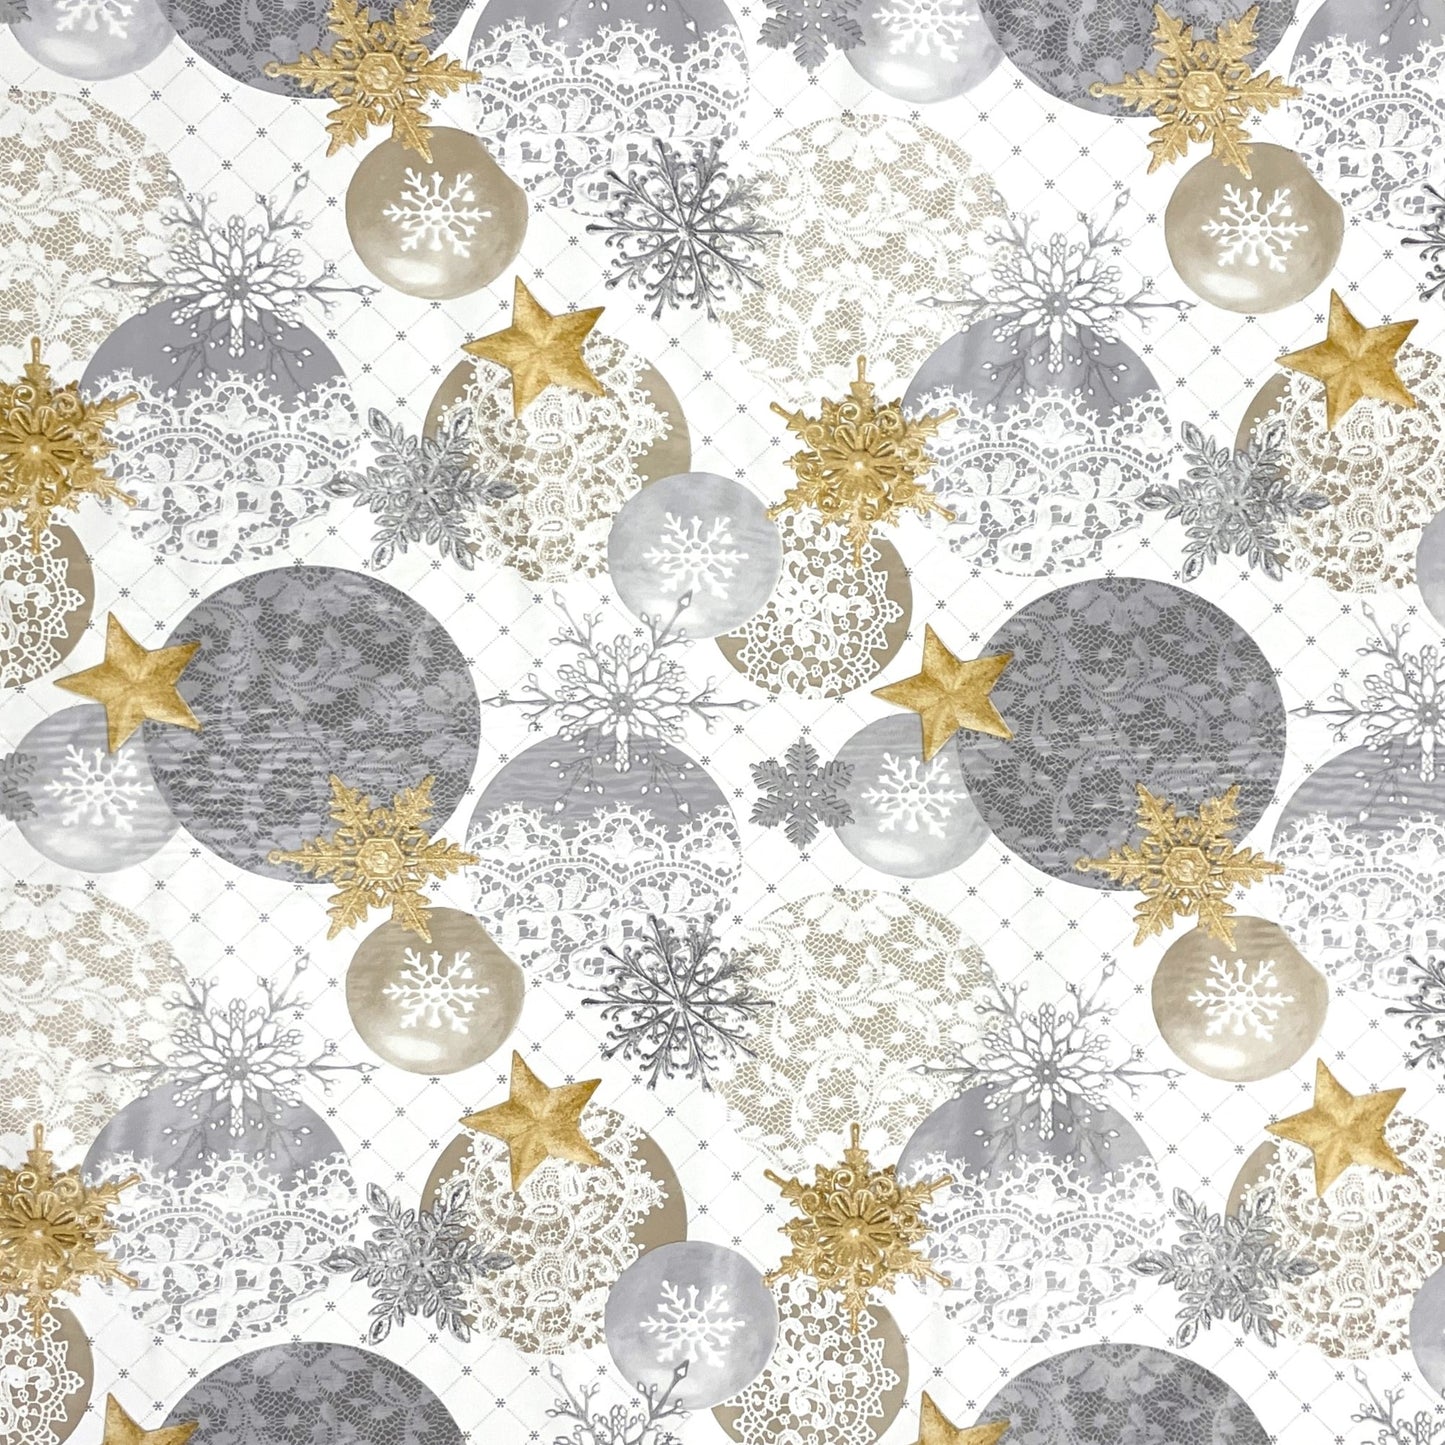 KEVKUS Wachstuch Tischdecke B7000-01 goldene Sterne Weihnachten Advent wählbar in eckig, rund und oval -